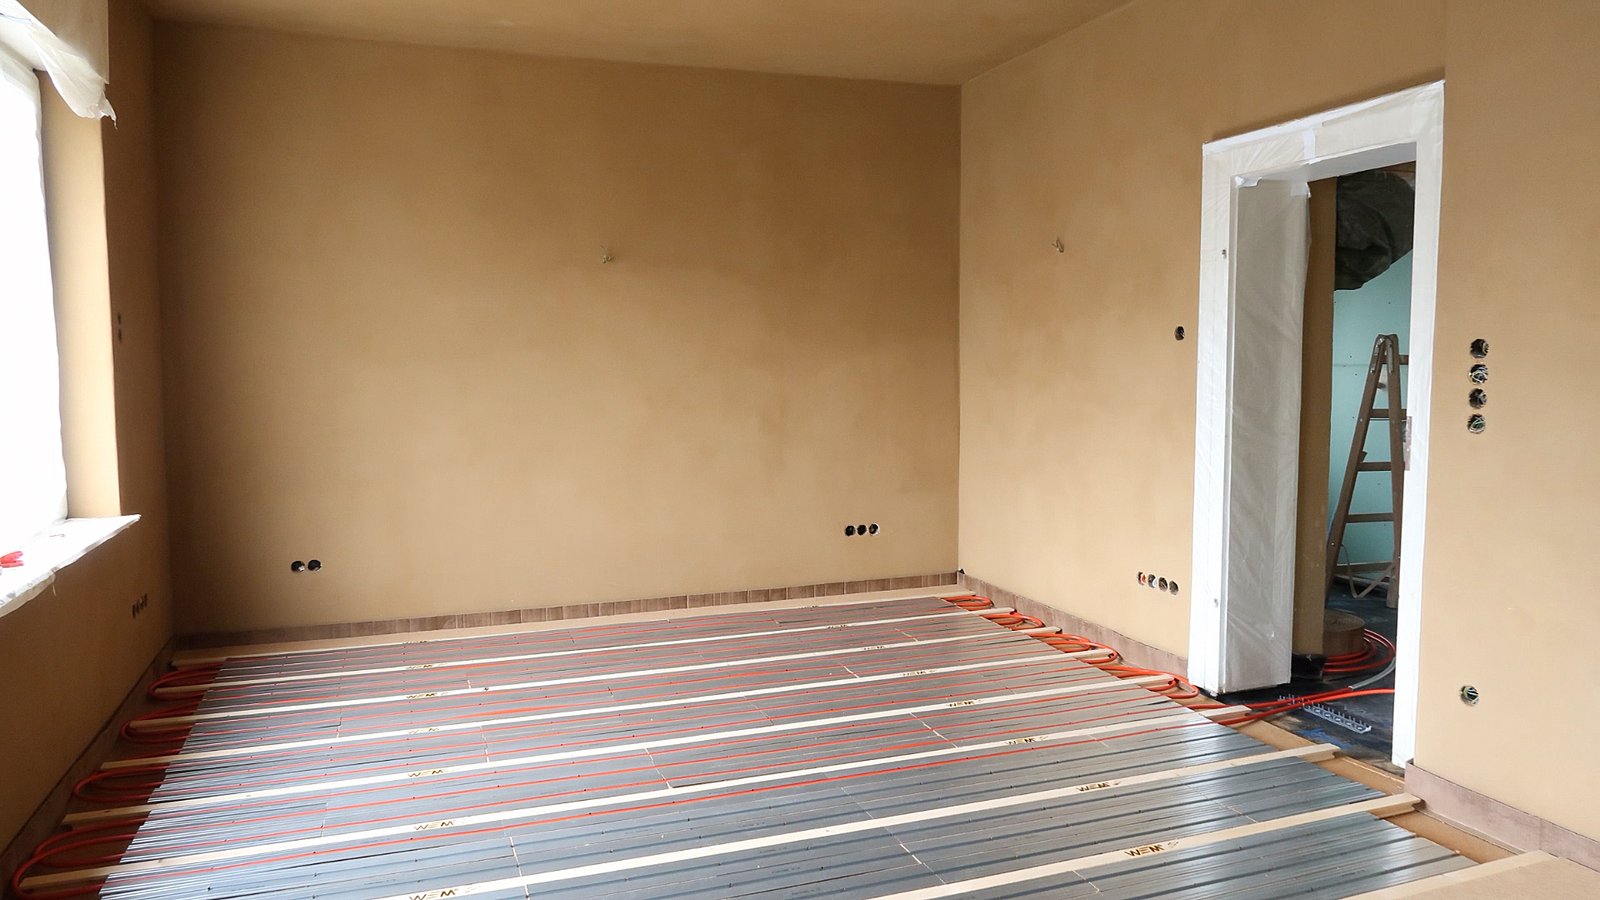 Bild eines Raumes mit verlegter Fußbodenheizung in Wärmeleitlamellen